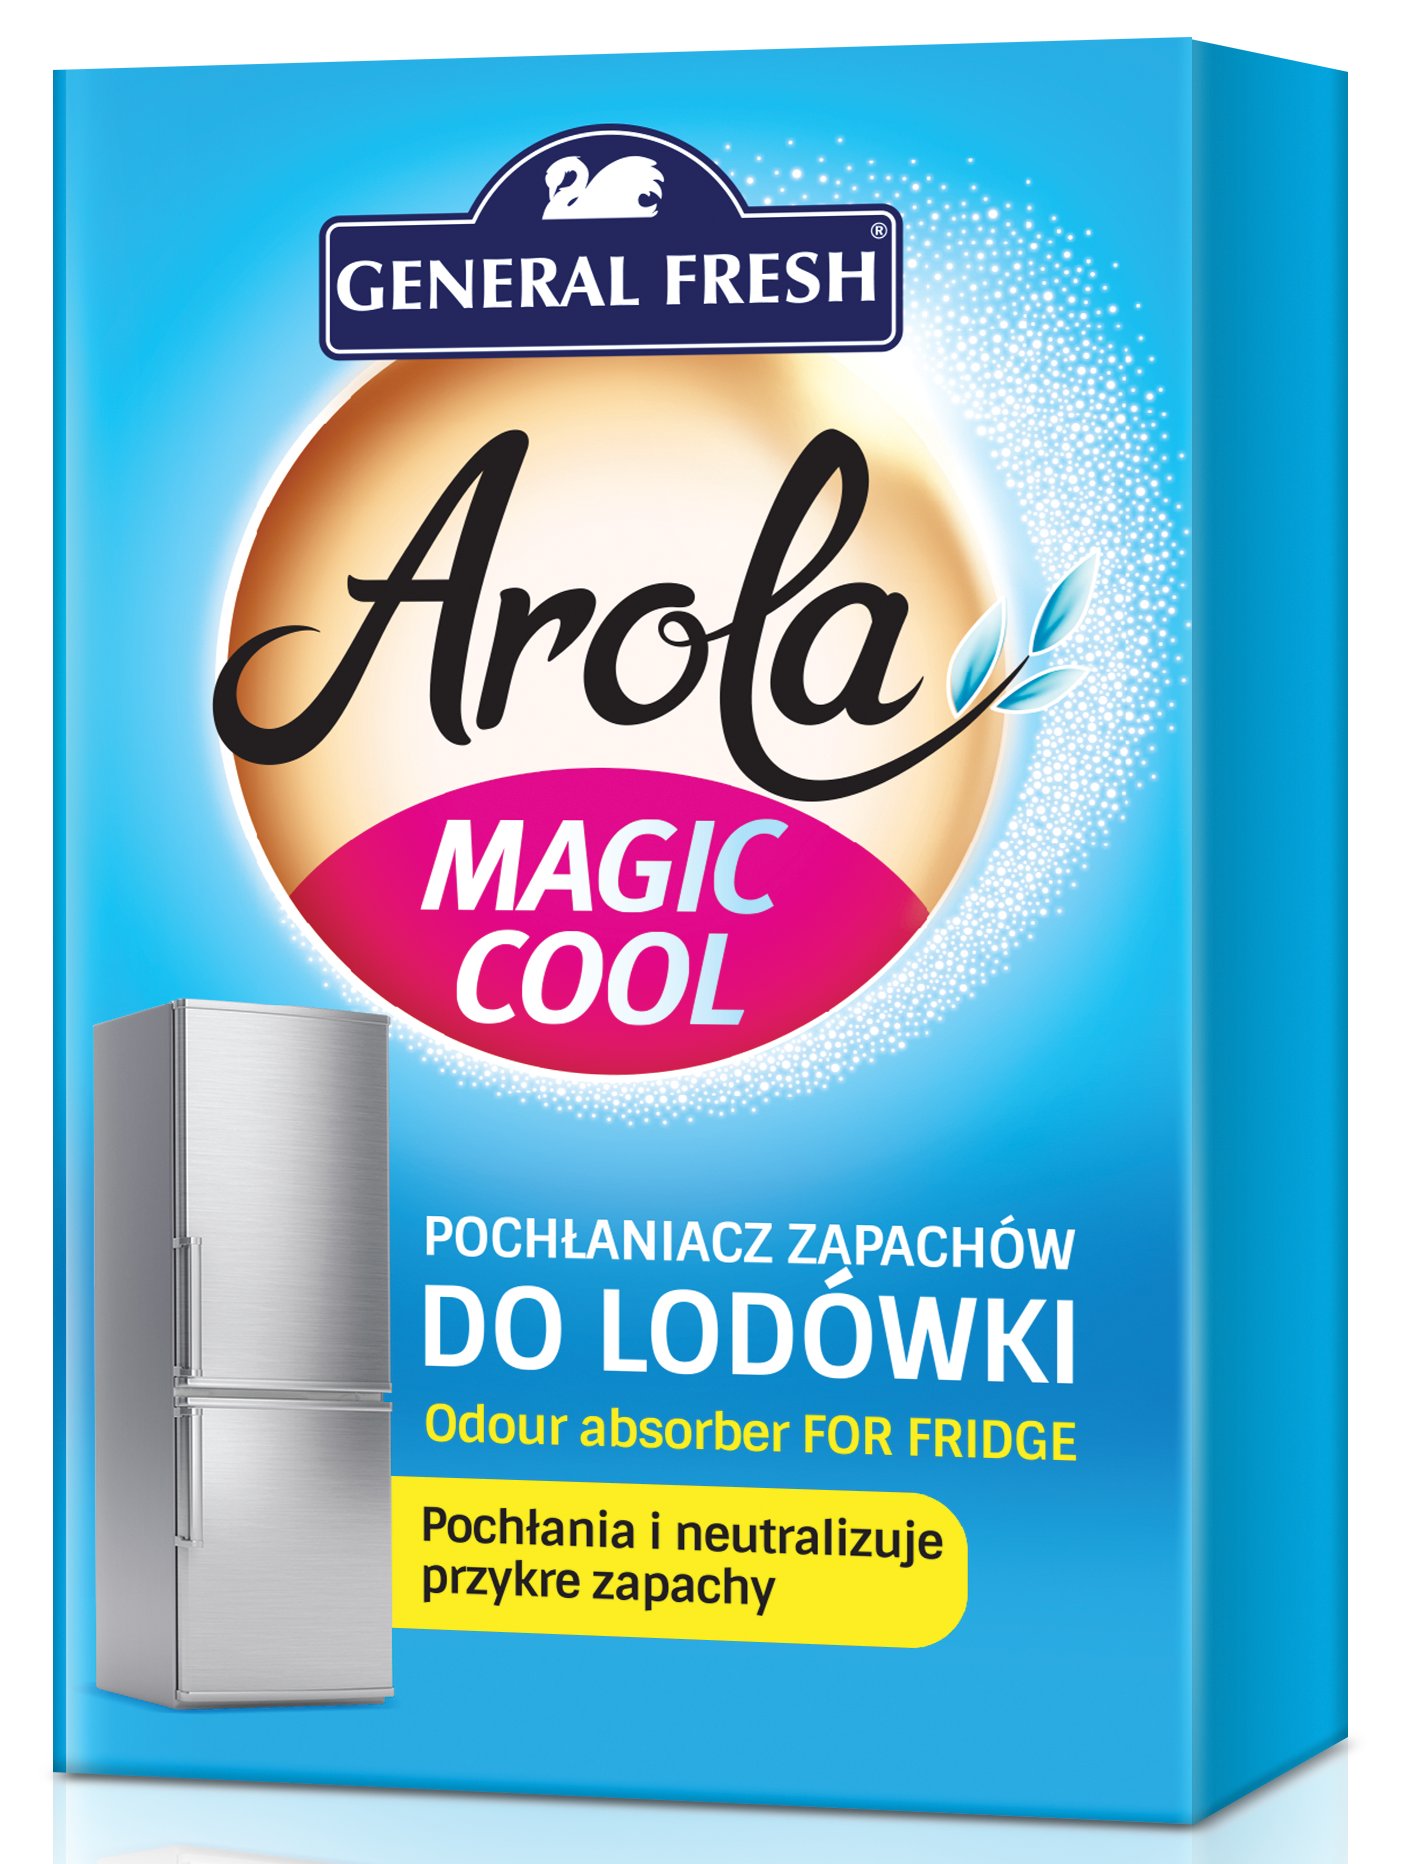 Magic fresh. Освежитель для холодильника. Дженерал Фреш. Magic cool. Гелевый освежитель воздуха General Fresh Arola.